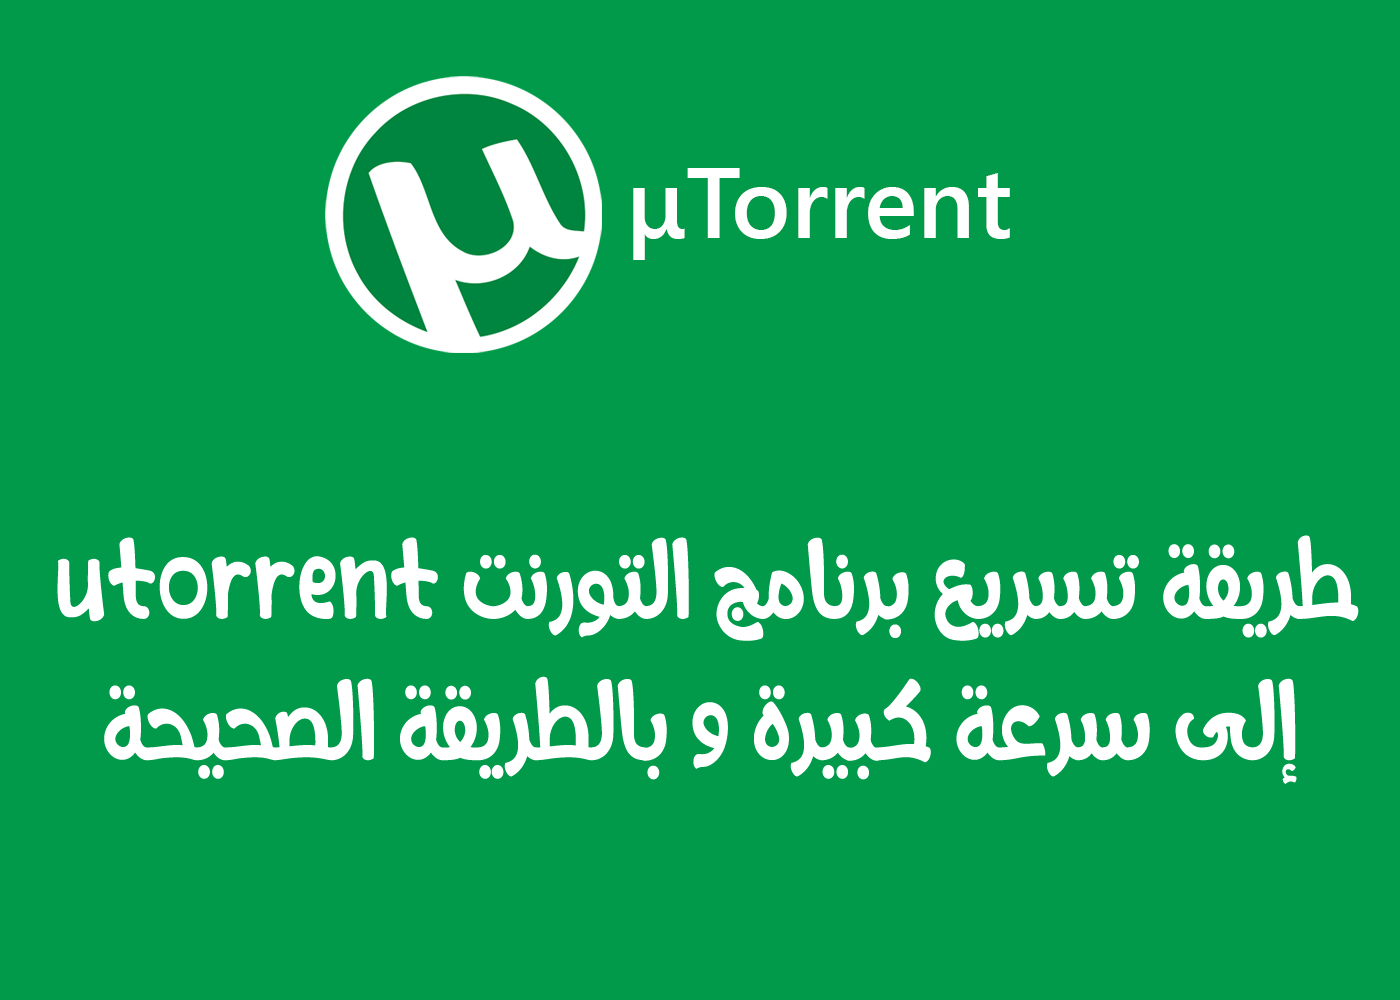  برنامج تسريع التحميل على برنامج utorrent الى اقصى سرعة